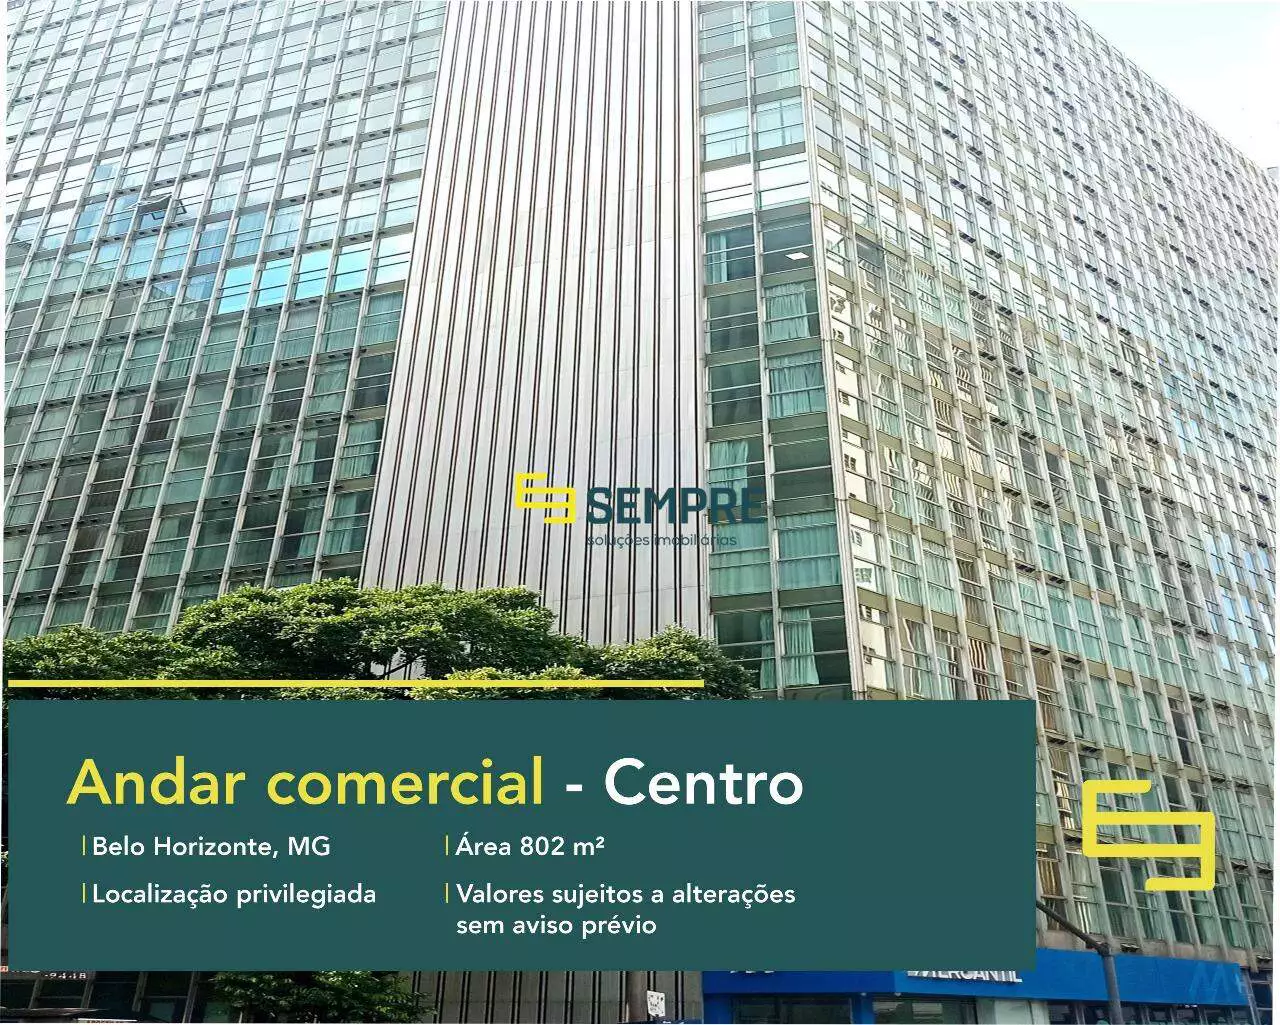 Andar comercial no Edifício Vicente de Araujo para locação - BH, excelente localização. O estabelecimento comercial conta com área de 802 m².